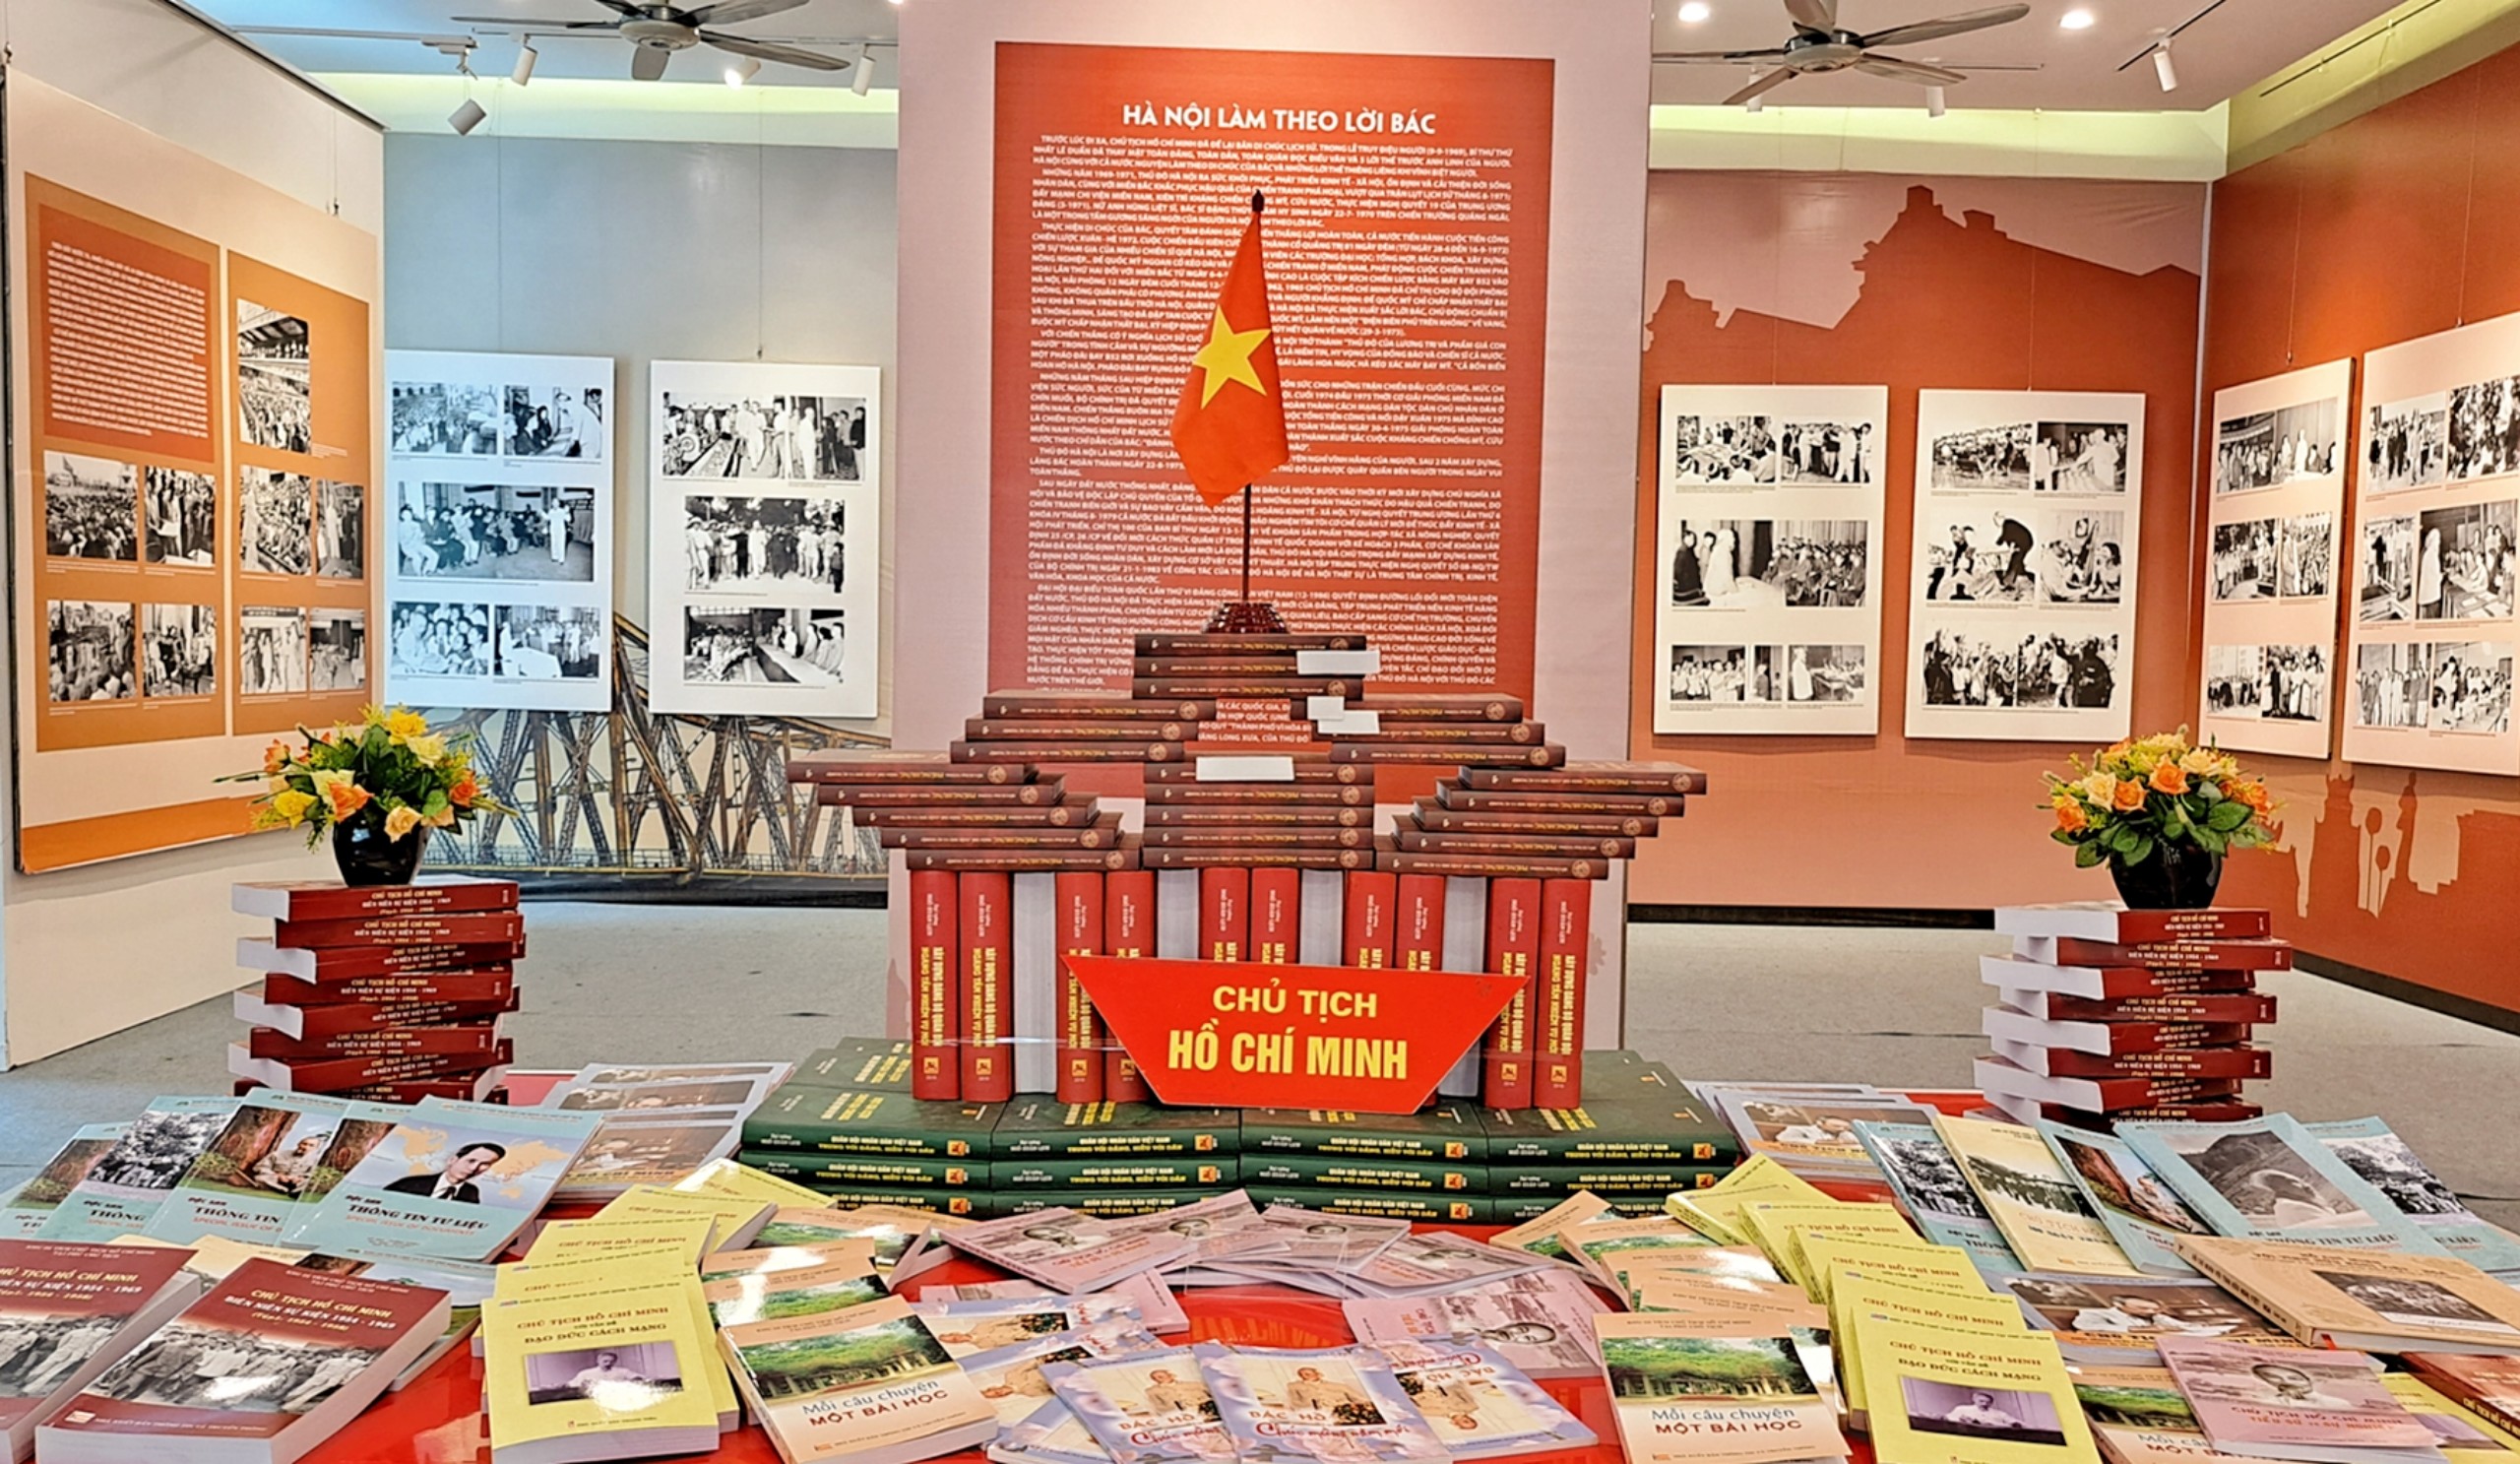 Nhiều tư liệu quý tại triển lãm ''Chủ tịch Hồ Chí Minh với Thủ đô Hà Nội” - 2